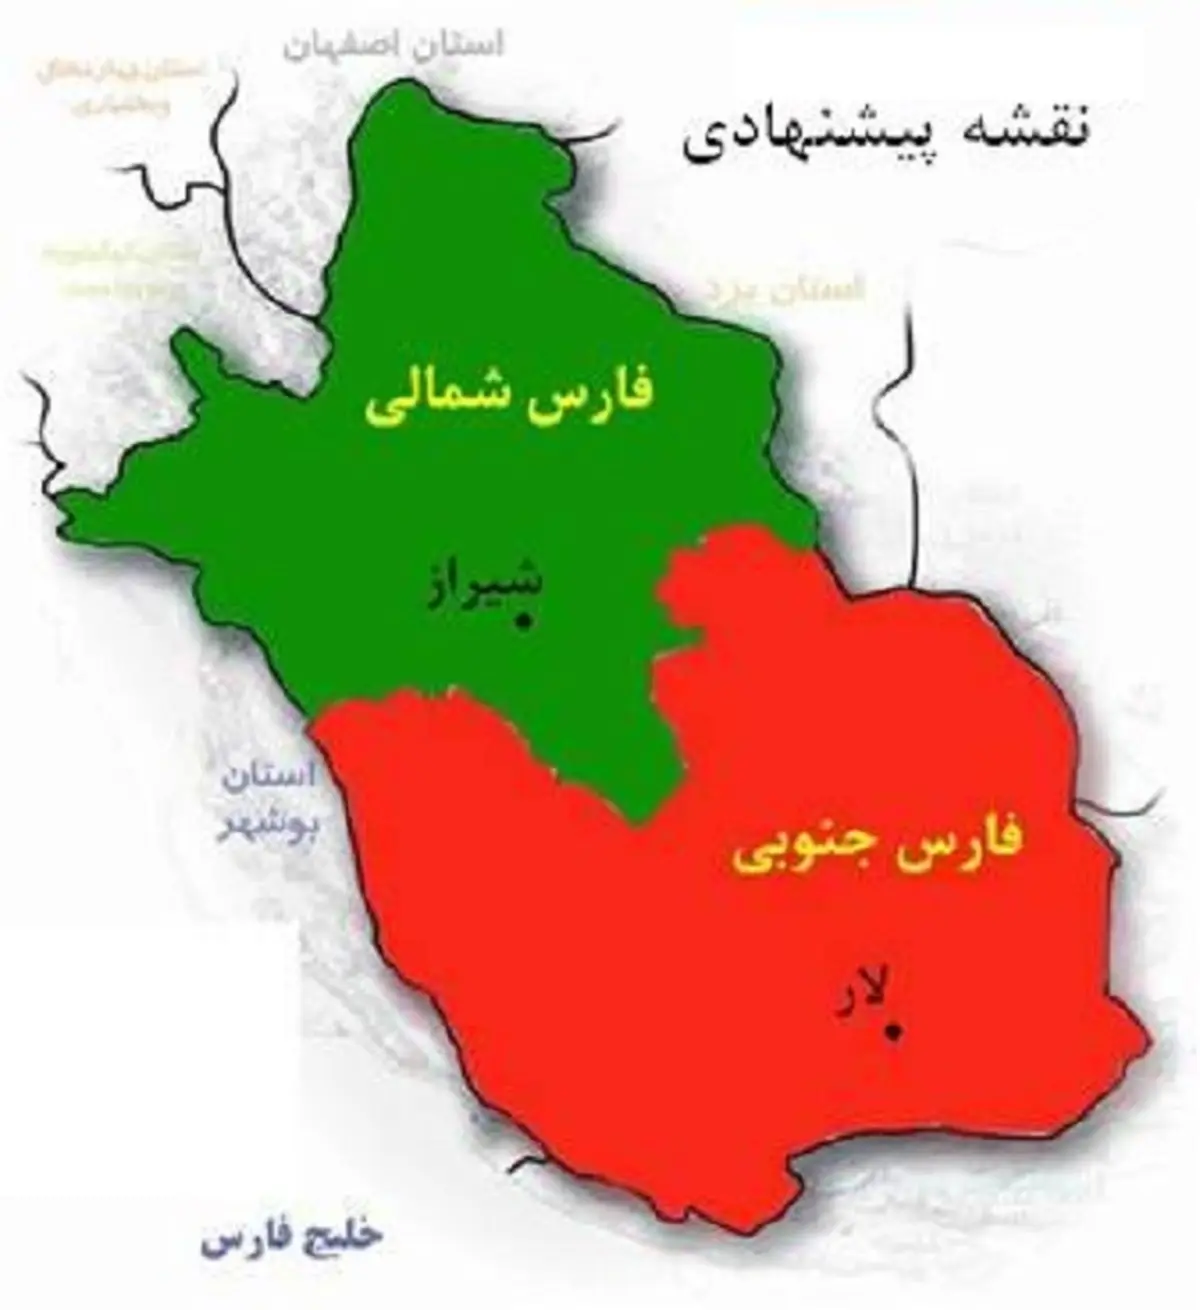 
استاندار فارس: هیچ بحثی در مورد تقسیم استان مطرح نیست
